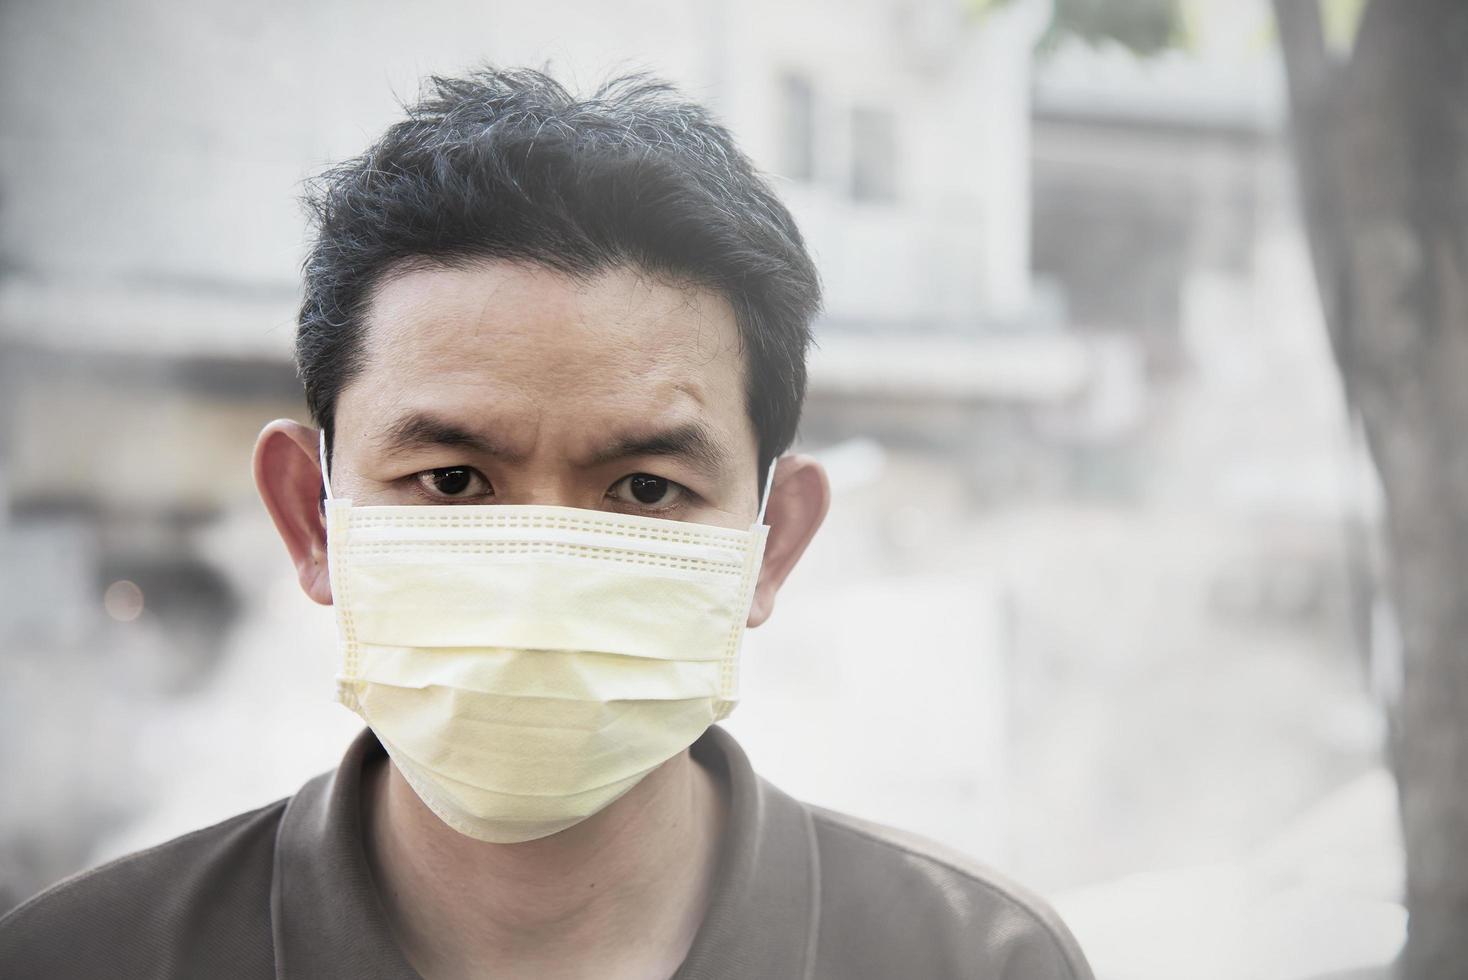 homem usando máscara protege poeira fina no ambiente de poluição do ar - pessoas com equipamentos de proteção para o conceito de poluição do ar foto